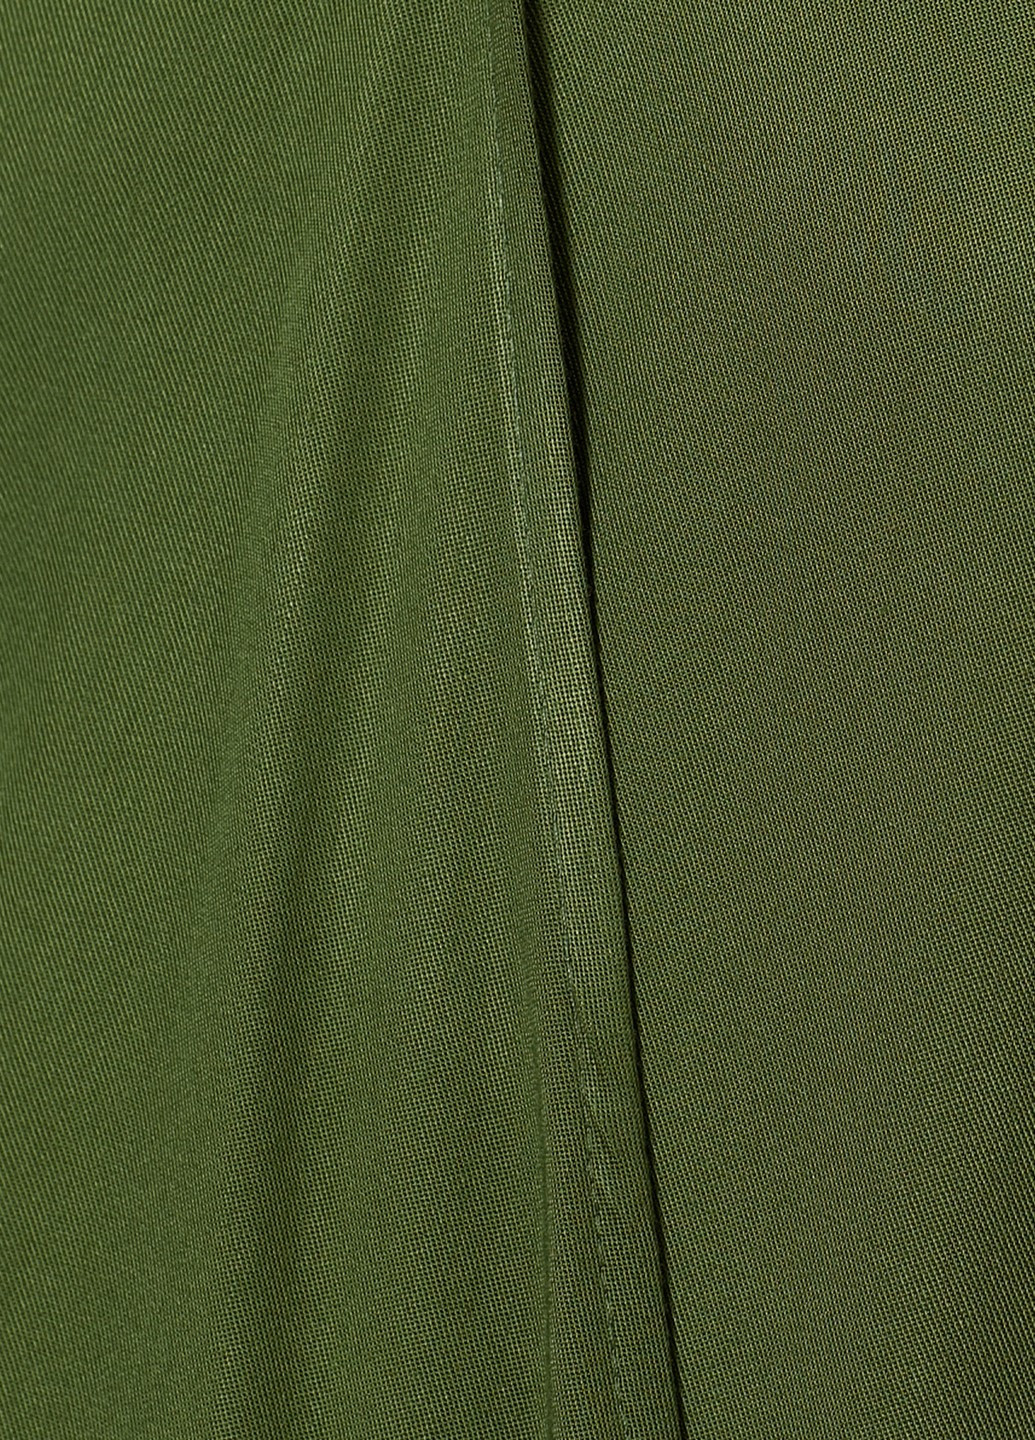 Зелёная блуза KOTON